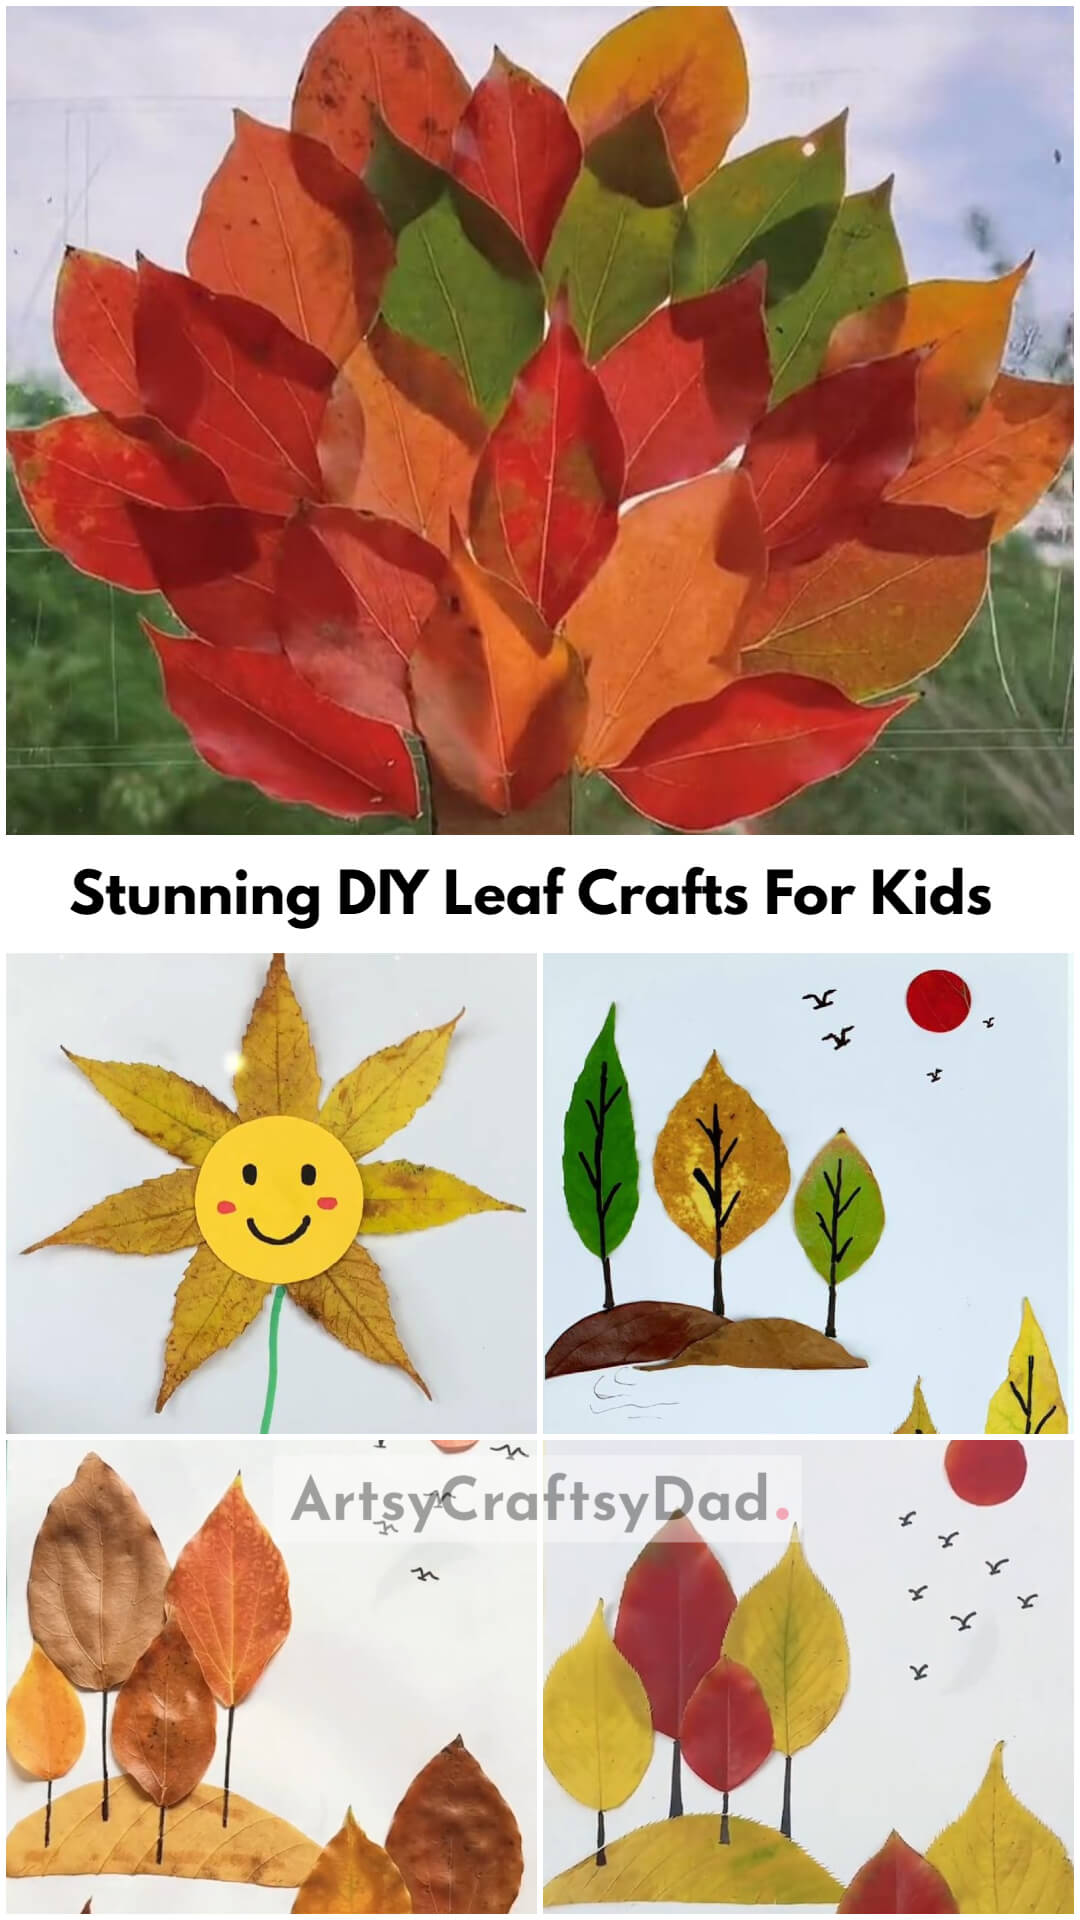 Stunning DIY Leaf Crafts For Kids To Make